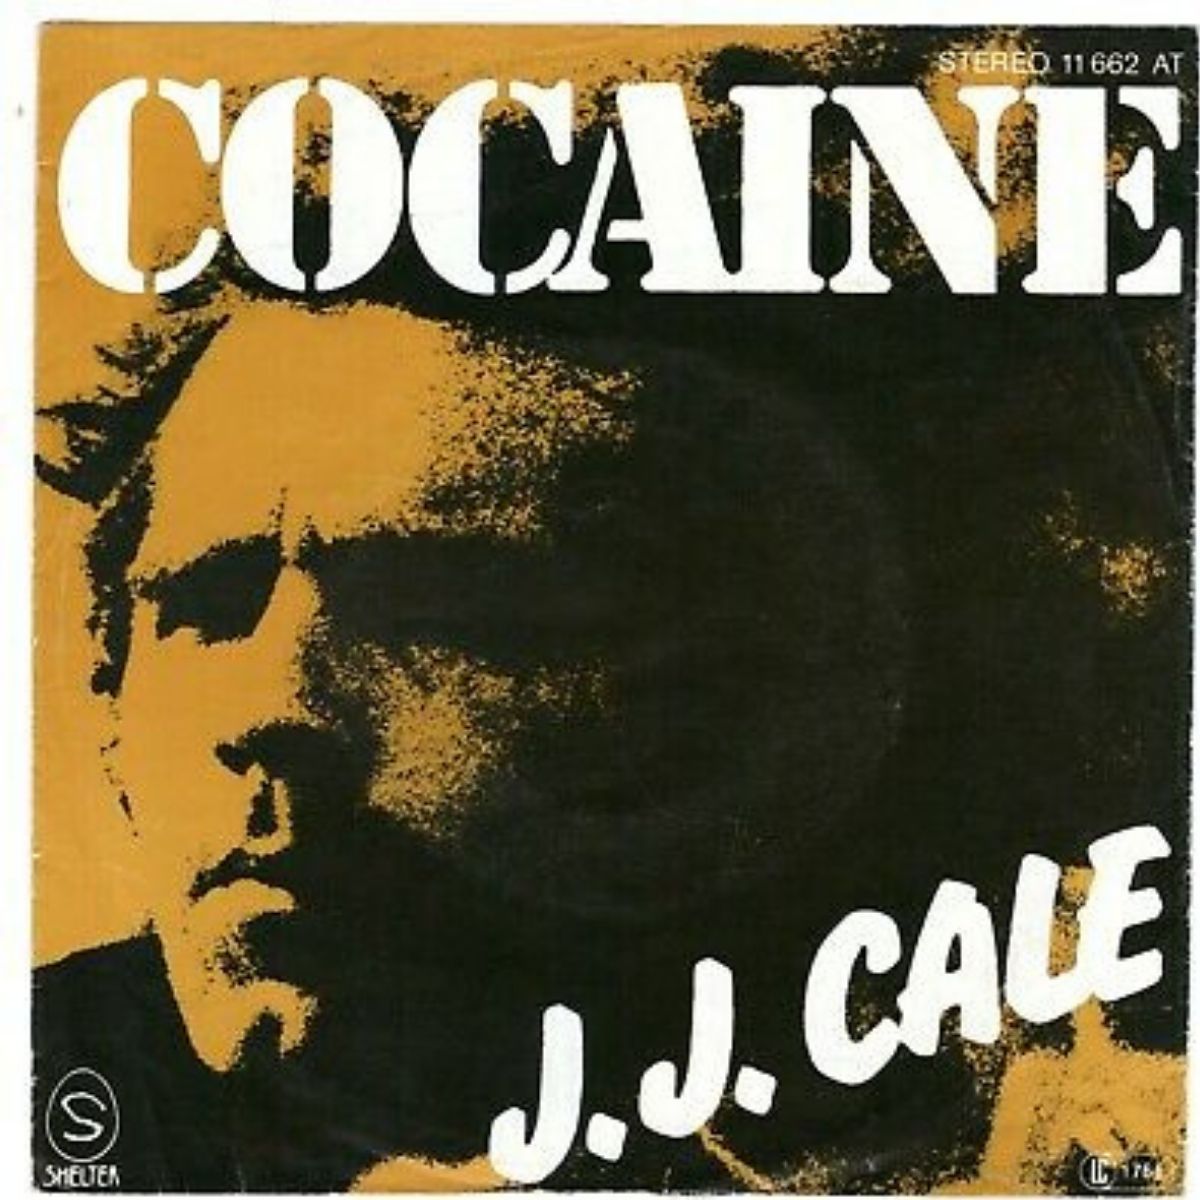 Capa da canção "Cocaine" de J.J. Cale